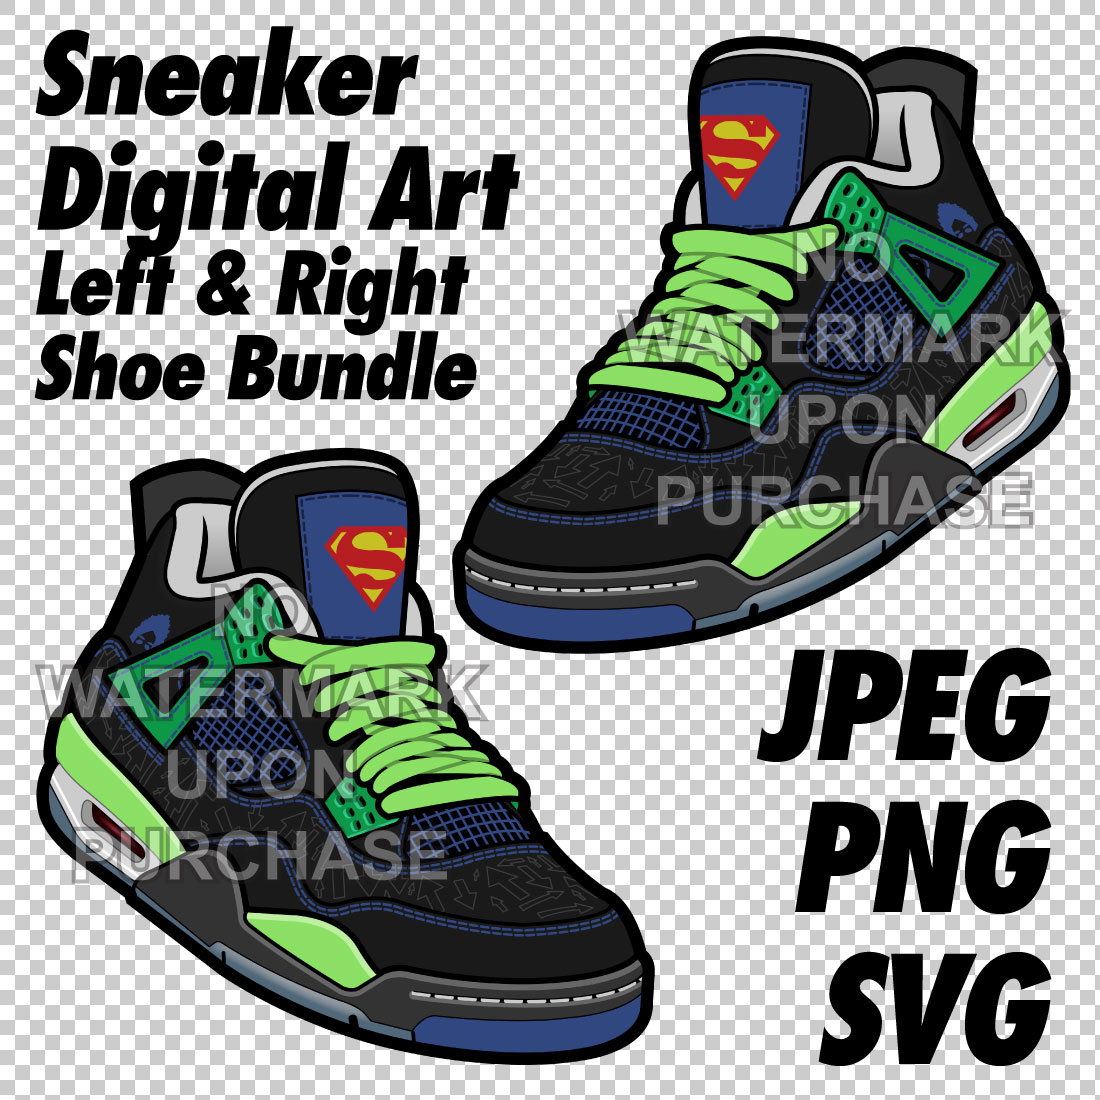 Air Jordan 4 Doernbecher JPEG PNG SVG digital download cover image.